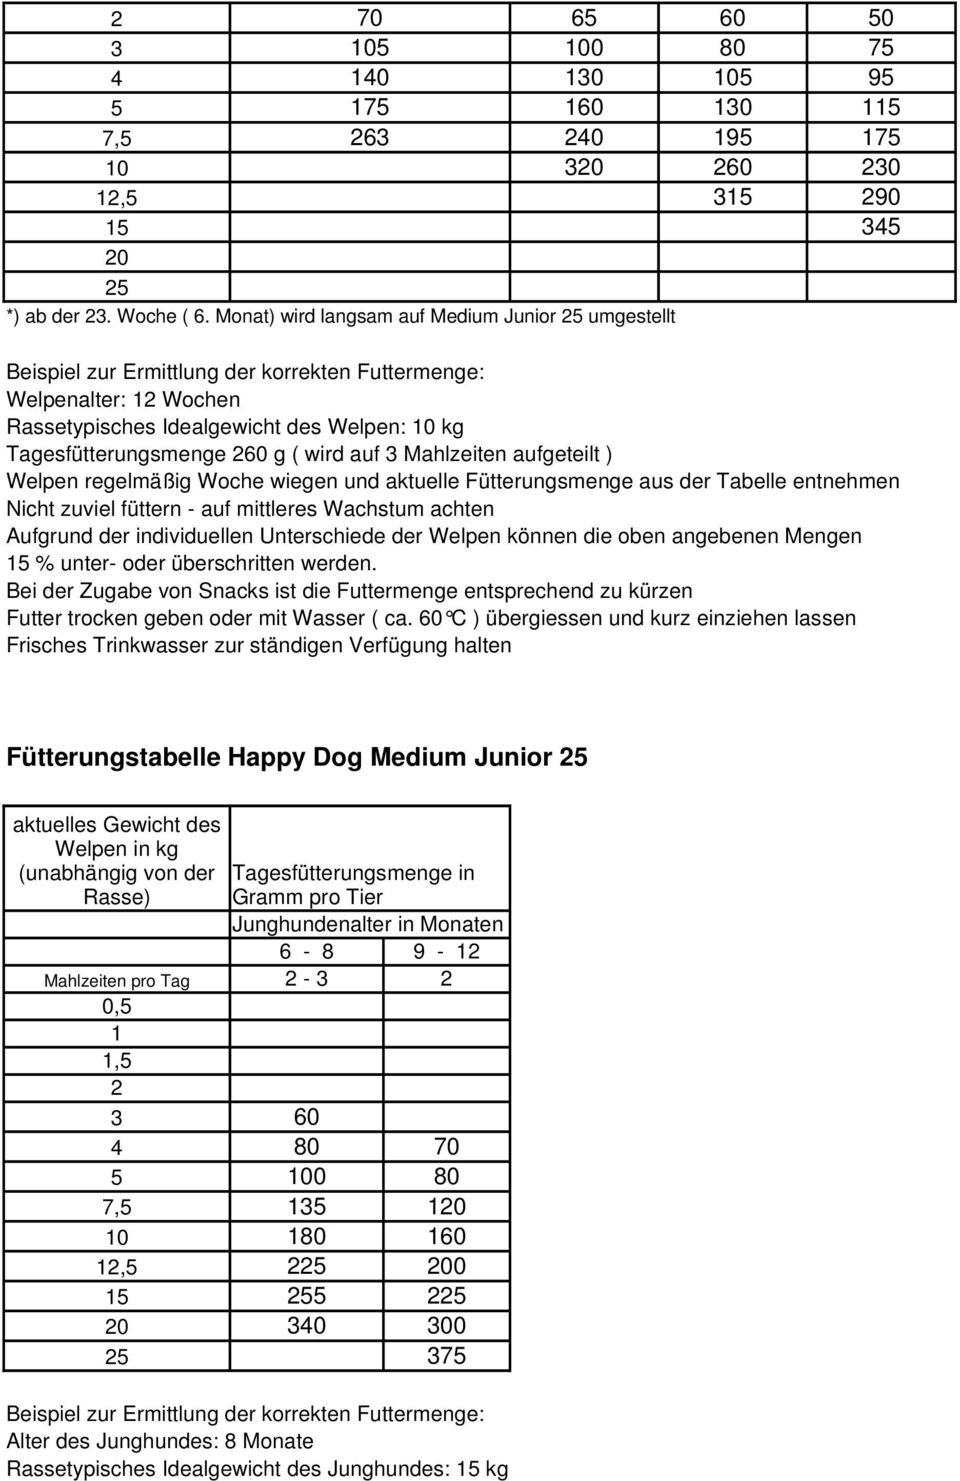 Woche wiegen und aktuelle Fütterungsmenge aus der Tabelle entnehmen Fütterungstabelle Happy Dog Medium Junior 25 Rasse) Tagesfütterungsmenge in Gramm pro Tier Junghundenalter in